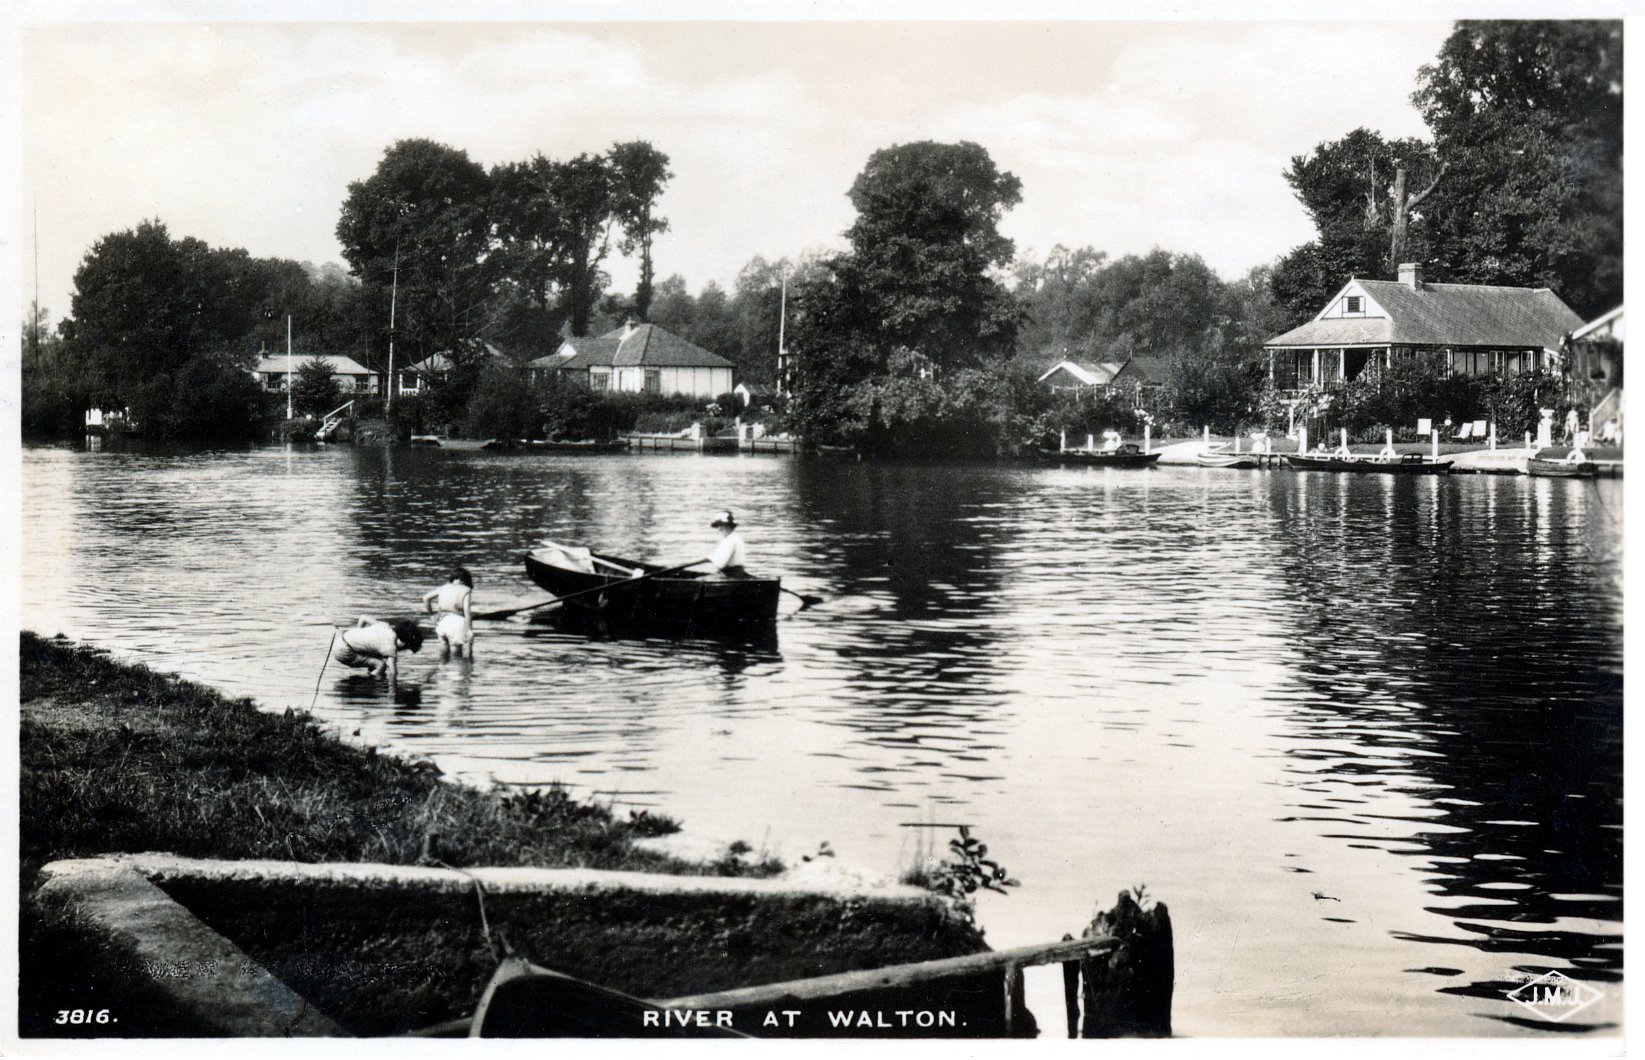 Walton,bungalows,children paddling,river view